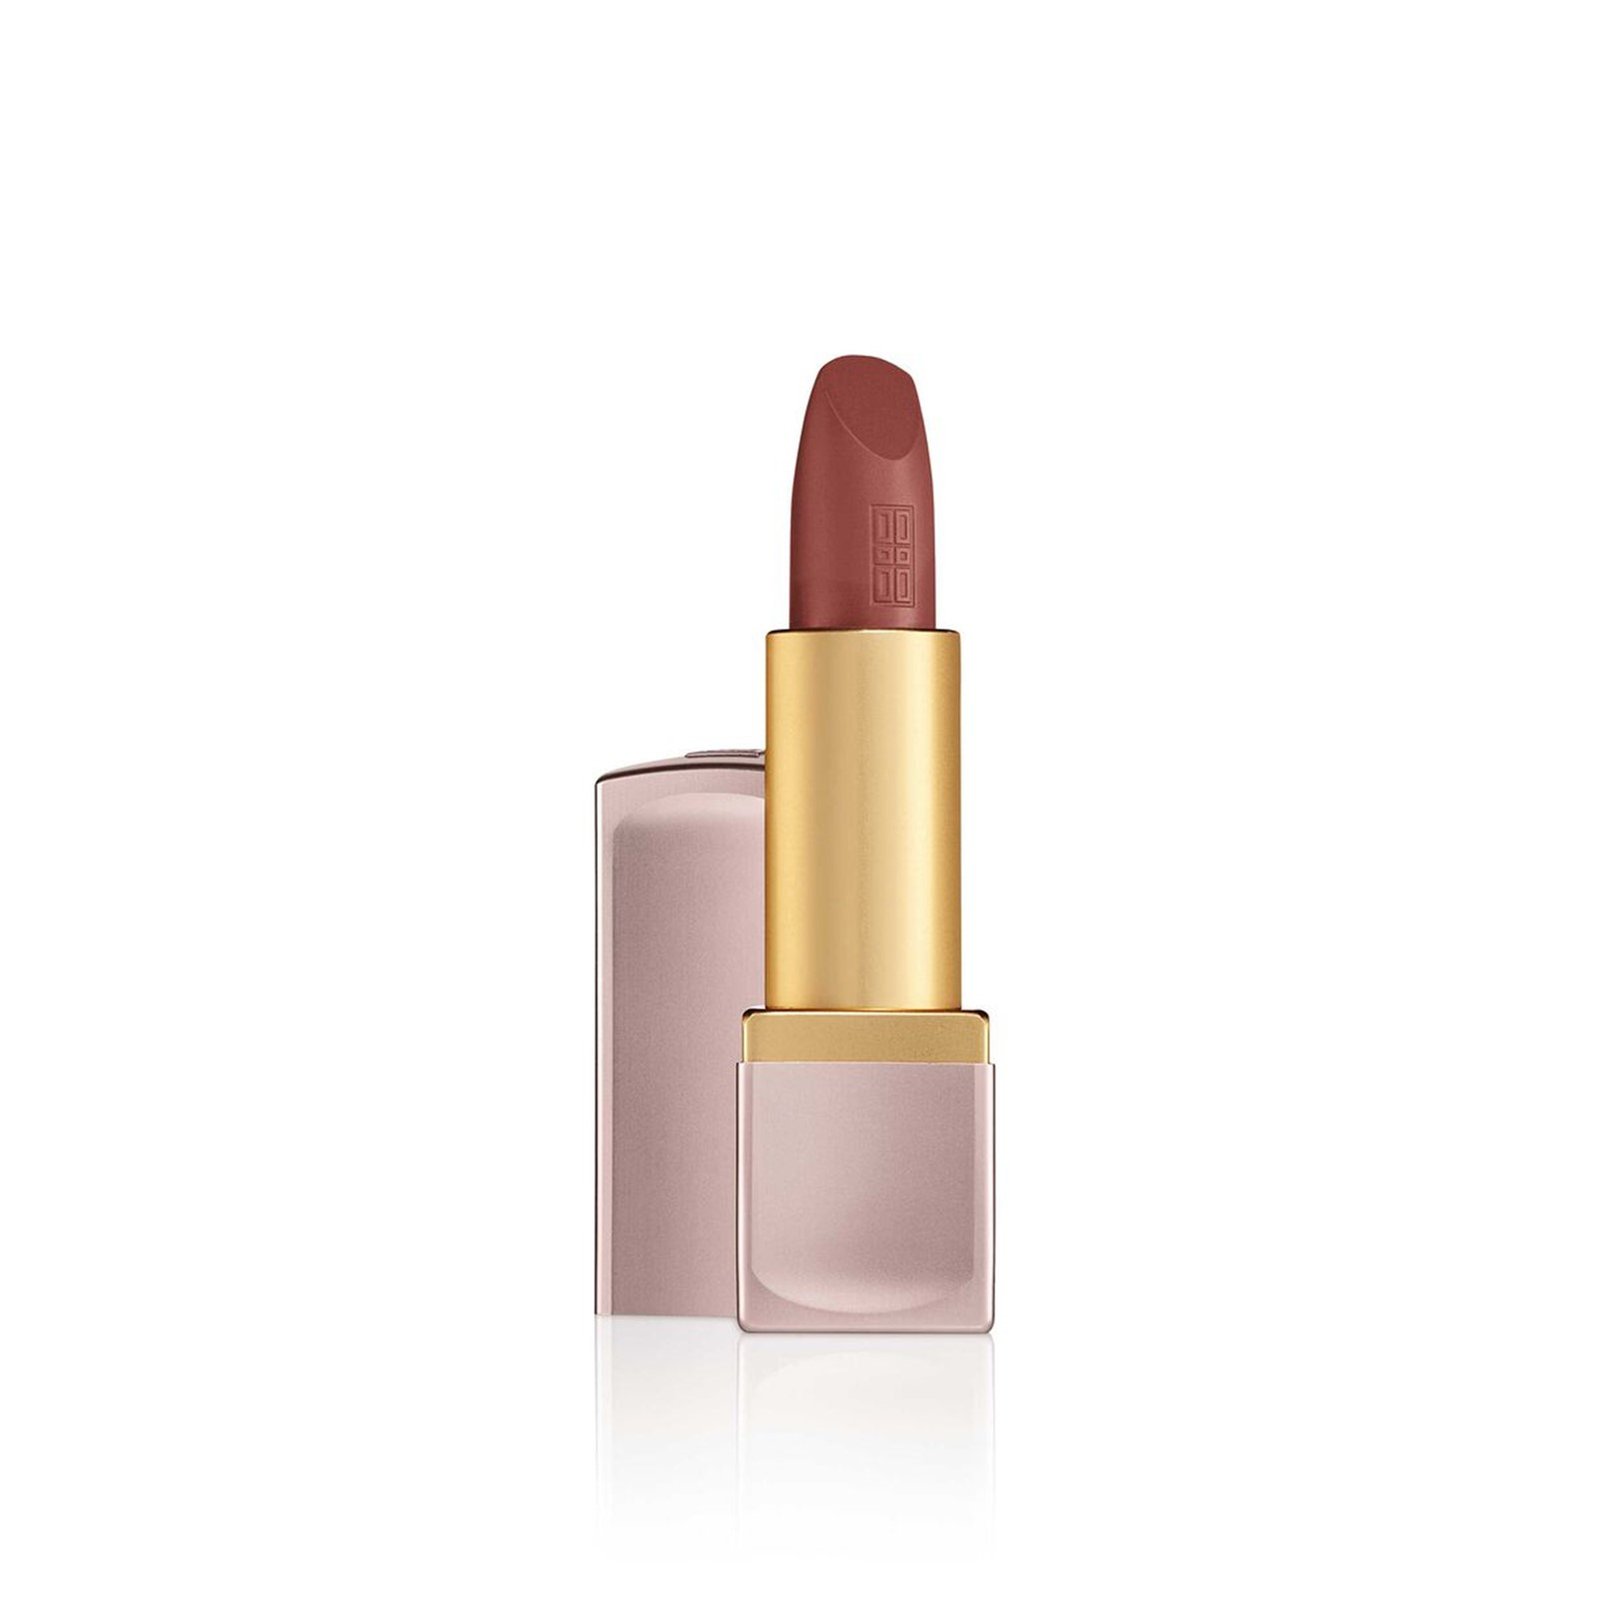 Elizabeth Arden Lip Color Lipstick 05 Ambitious Mauve Matte 4g (0.14 oz)